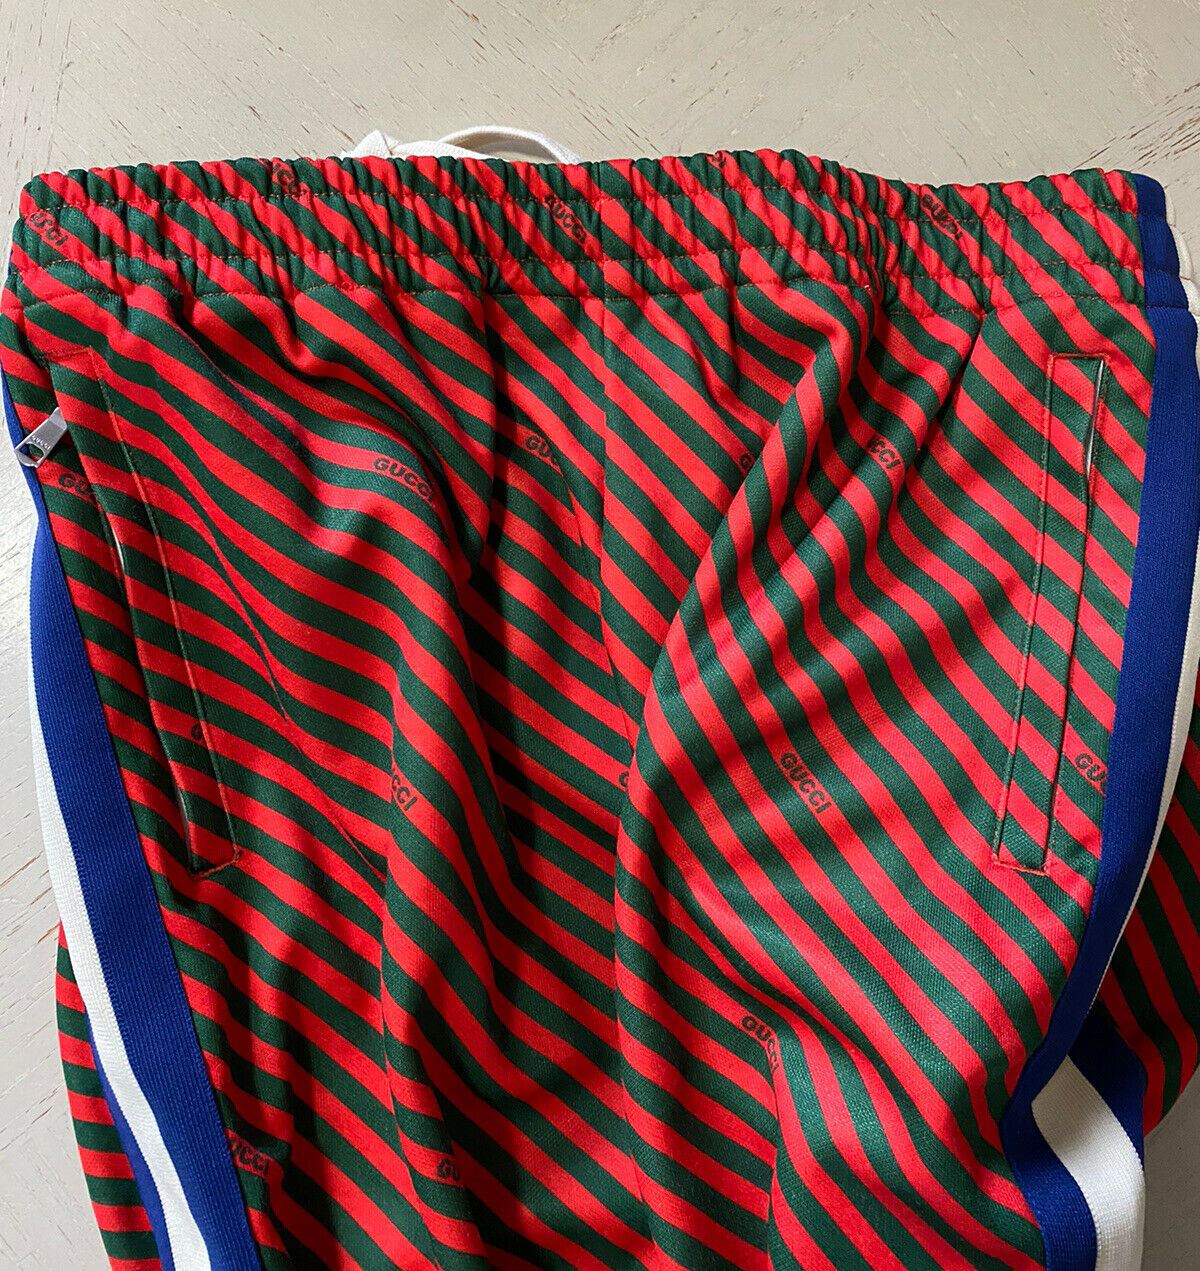 Neue Herren-Jogginghose von Gucci für 1.500 $ in Blau/Rot/Grün, Größe XXL, Italien